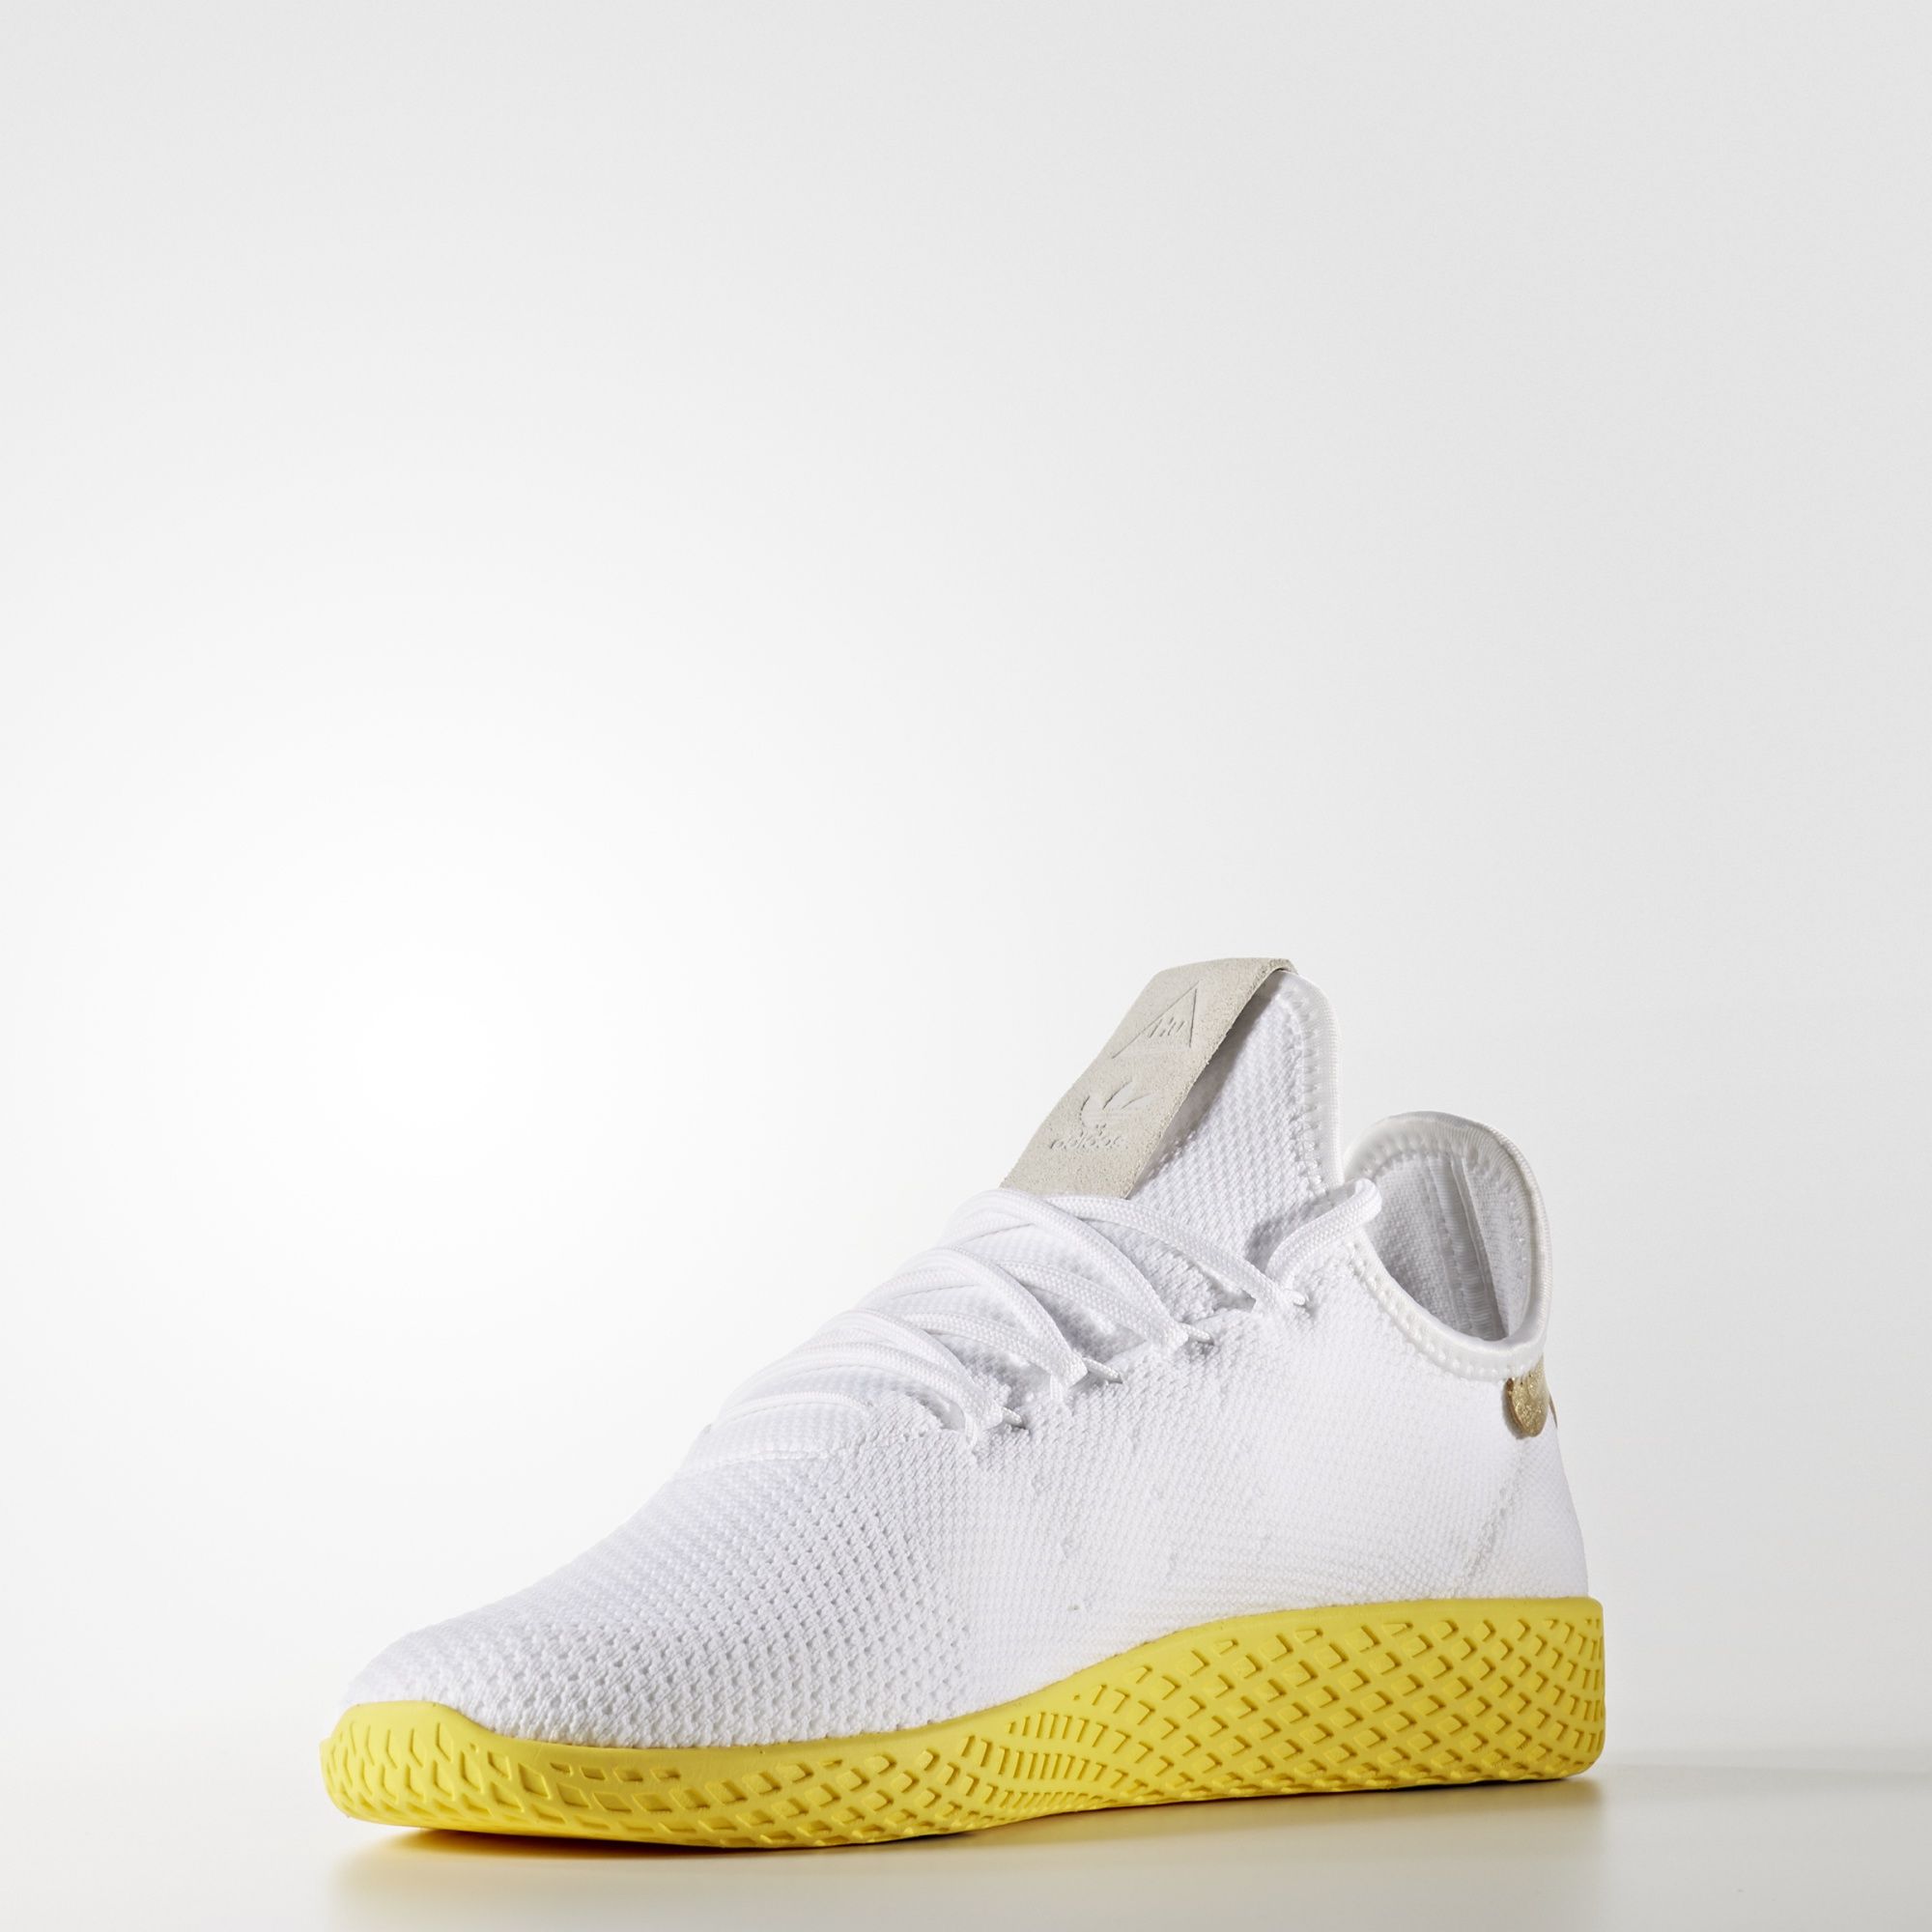 adidas-x-pharrell-tennis-hu-white-yellow-3